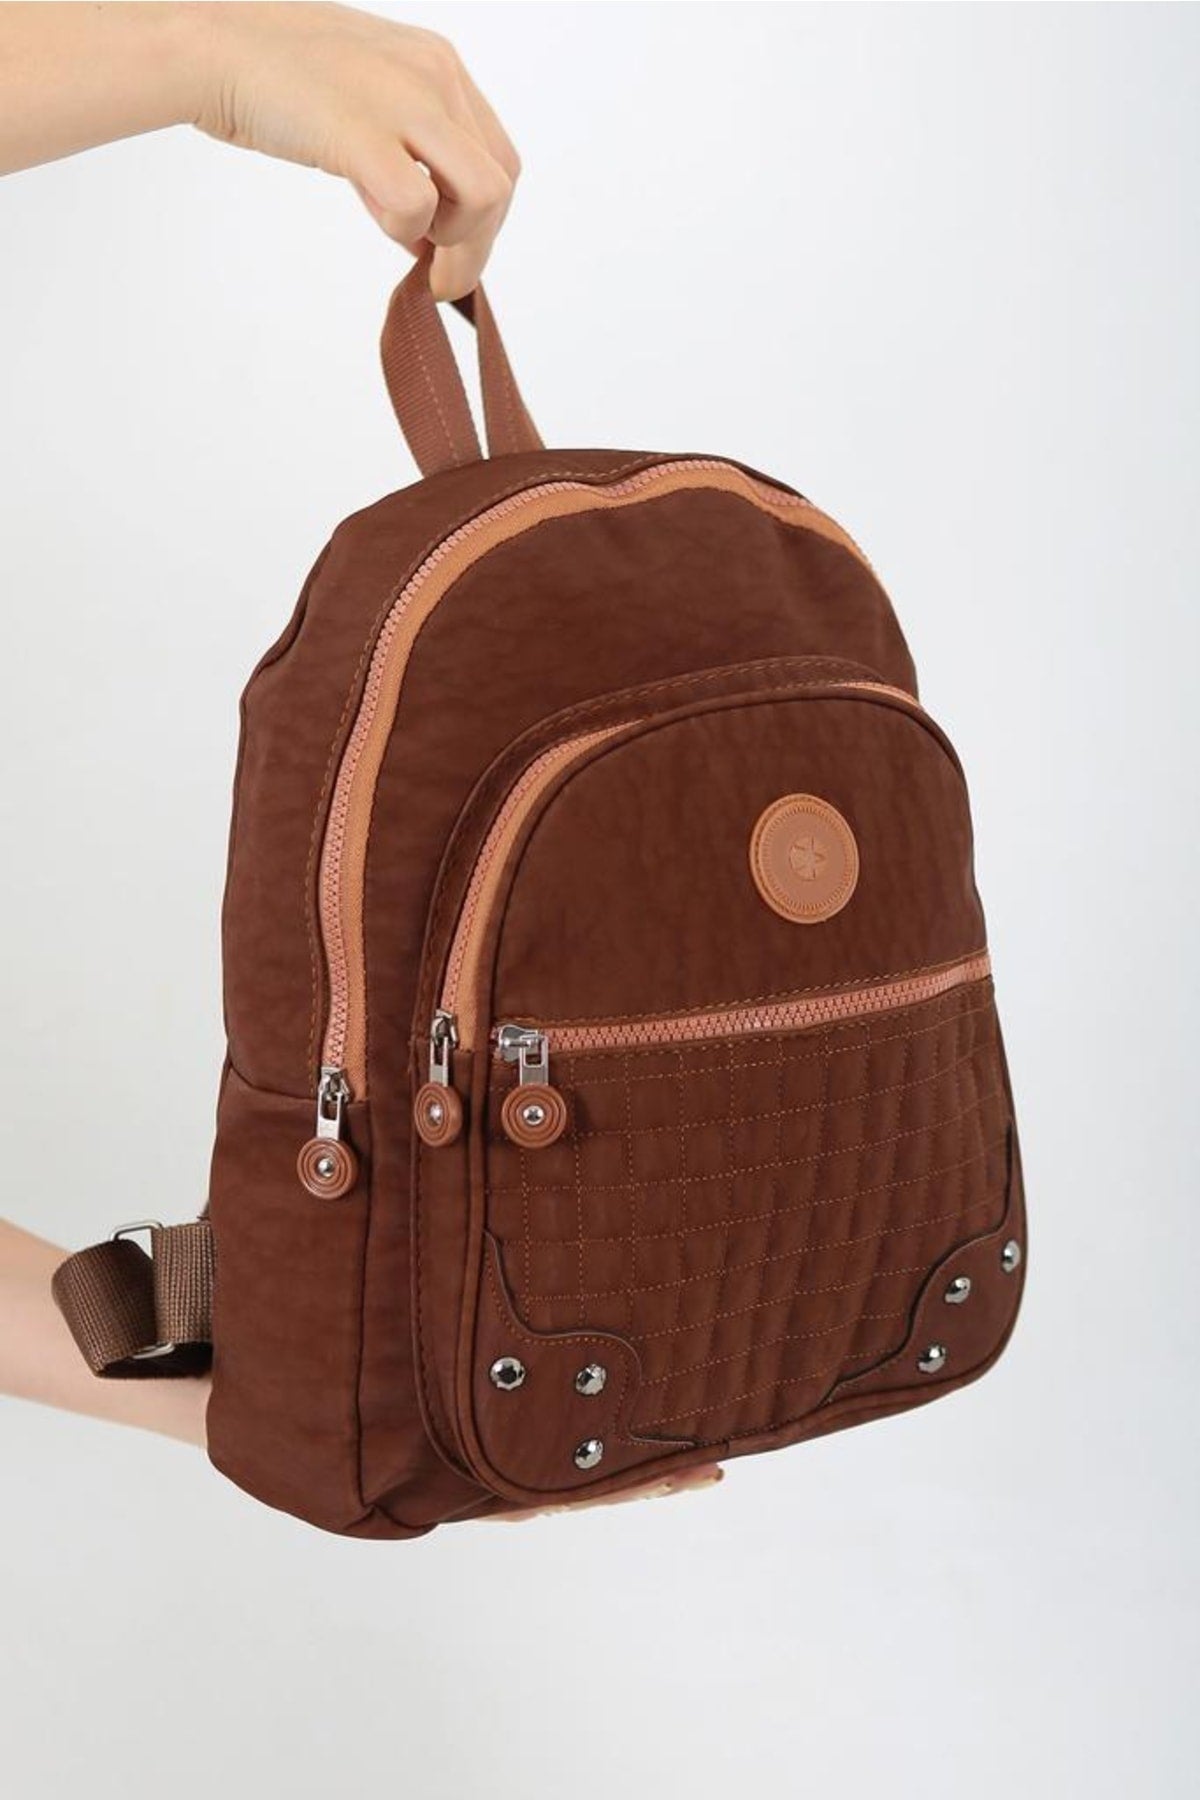 Unisex Tan Crinkle Fabric Waterproof & Dirt Resistant Backpack And School Bag